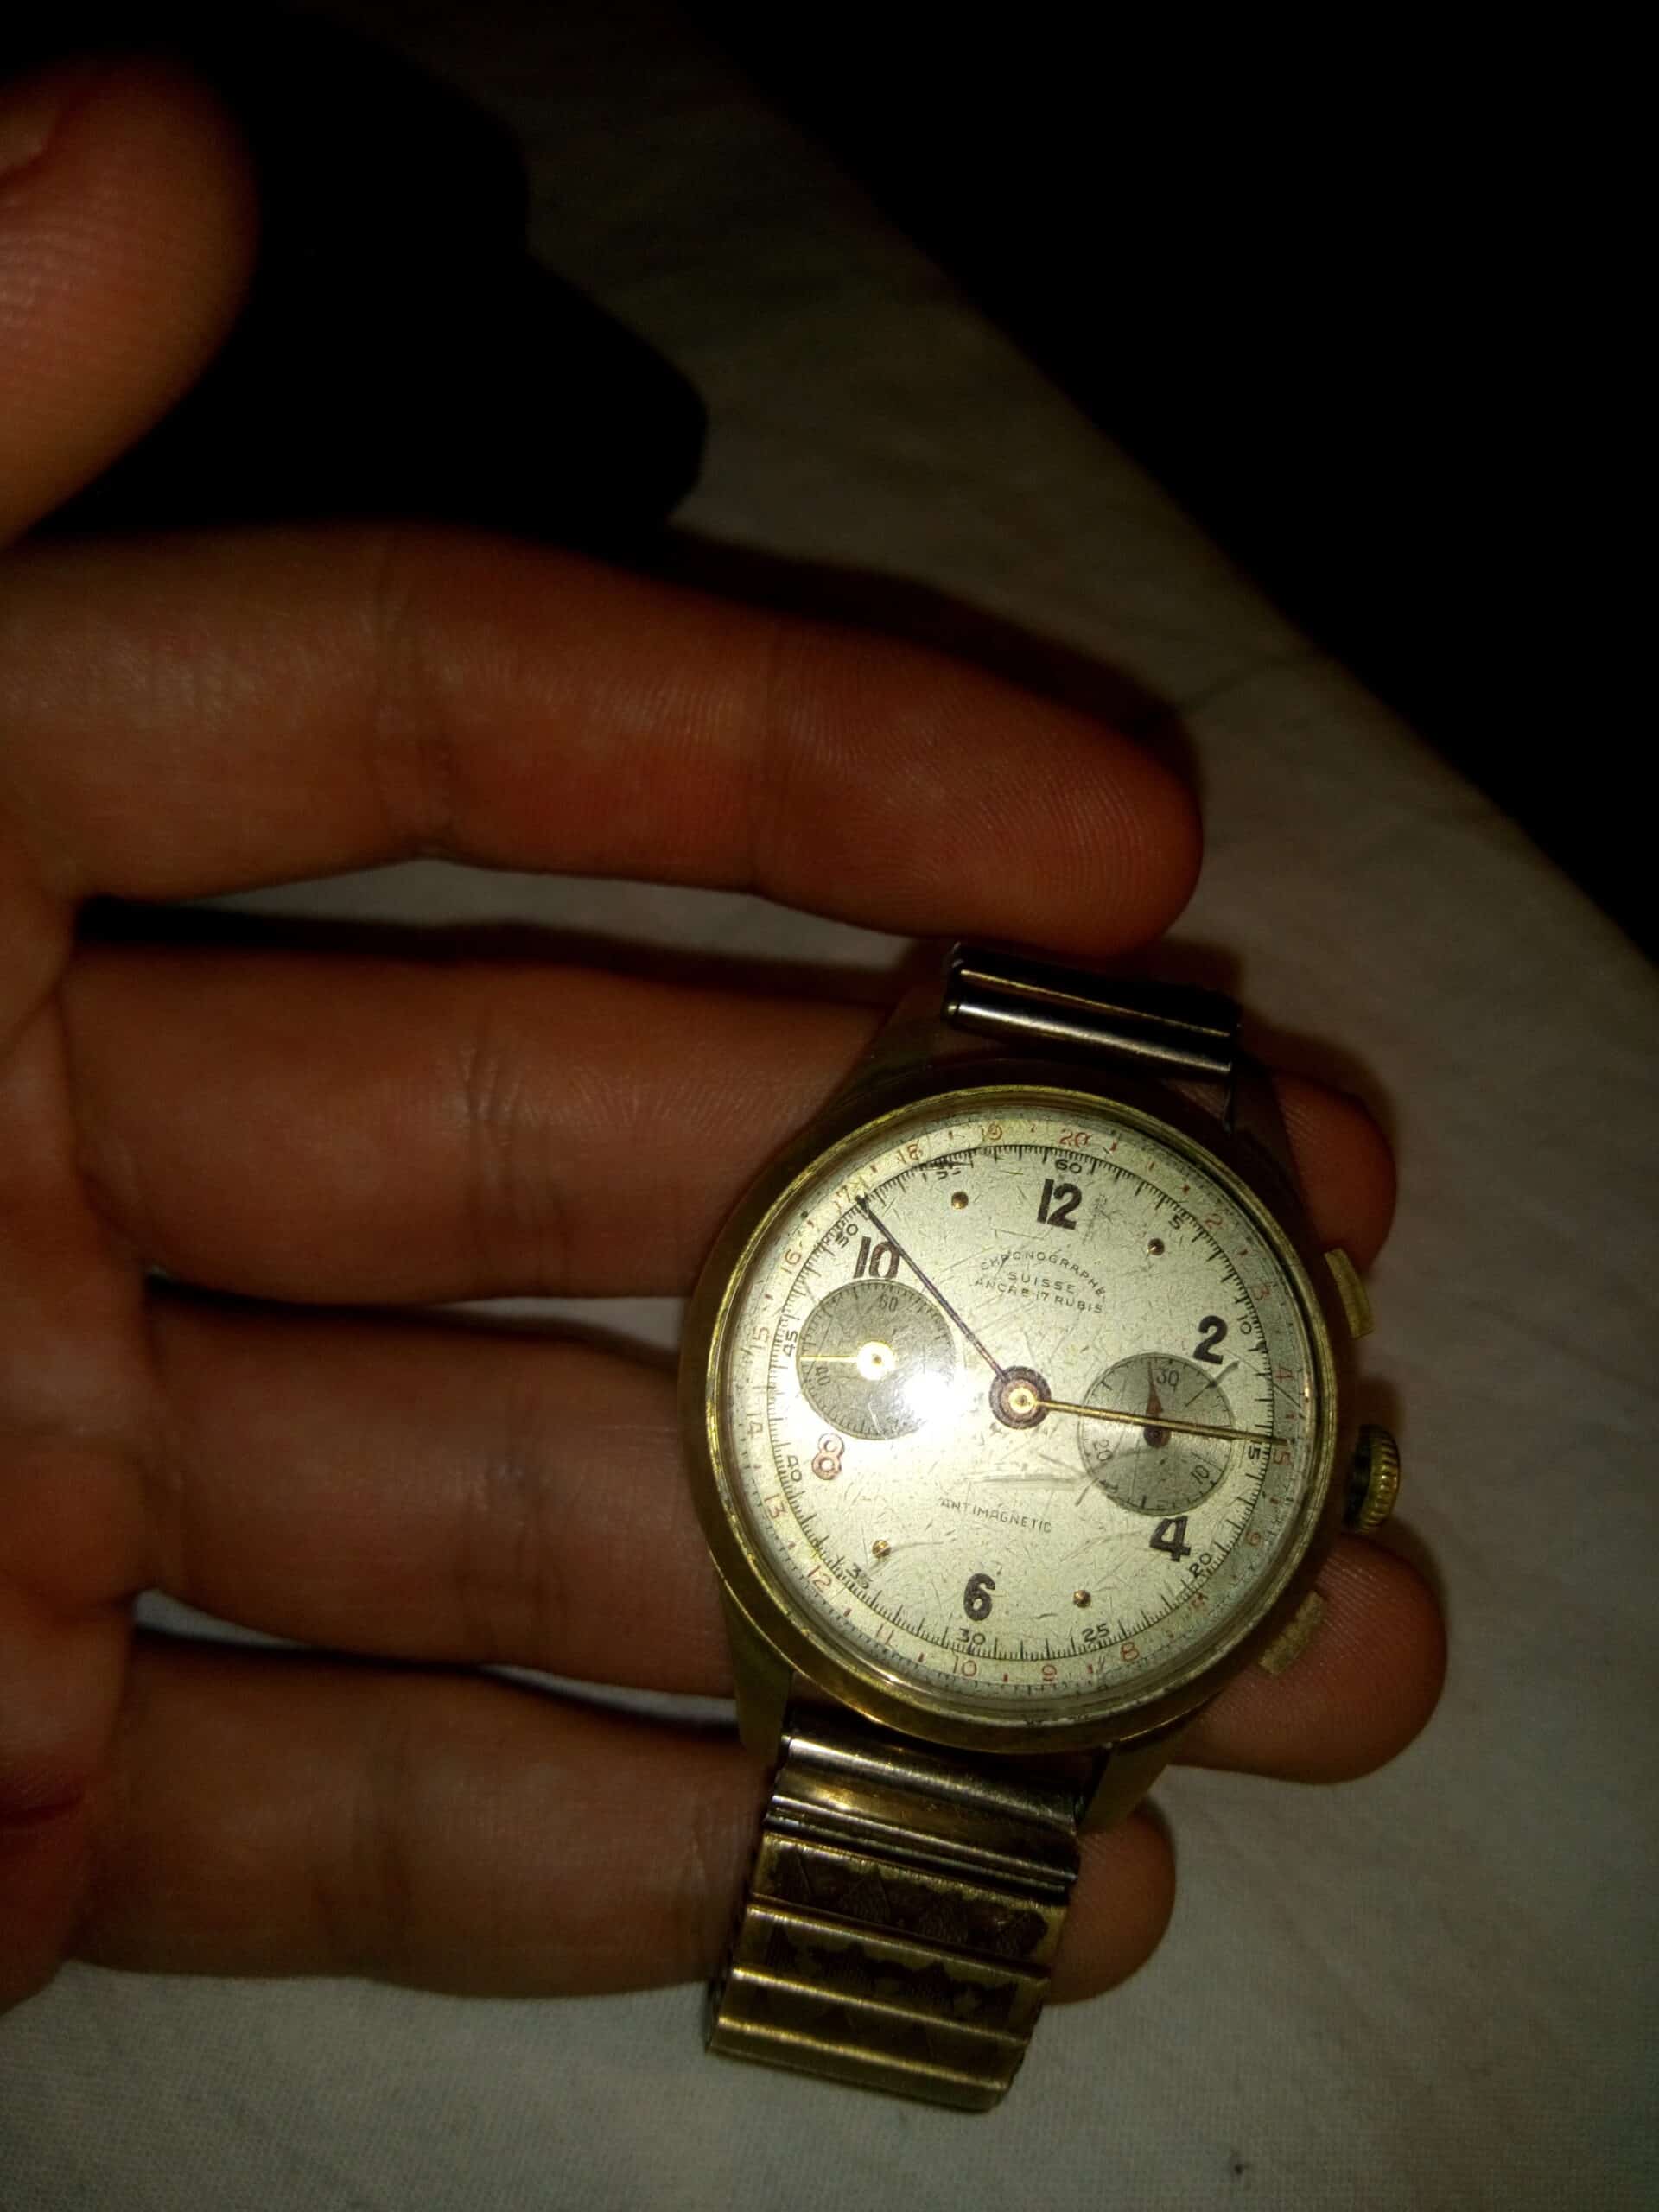 Estimation Montre, horloge: Montre chronographe Suisse ancre 17 rubis